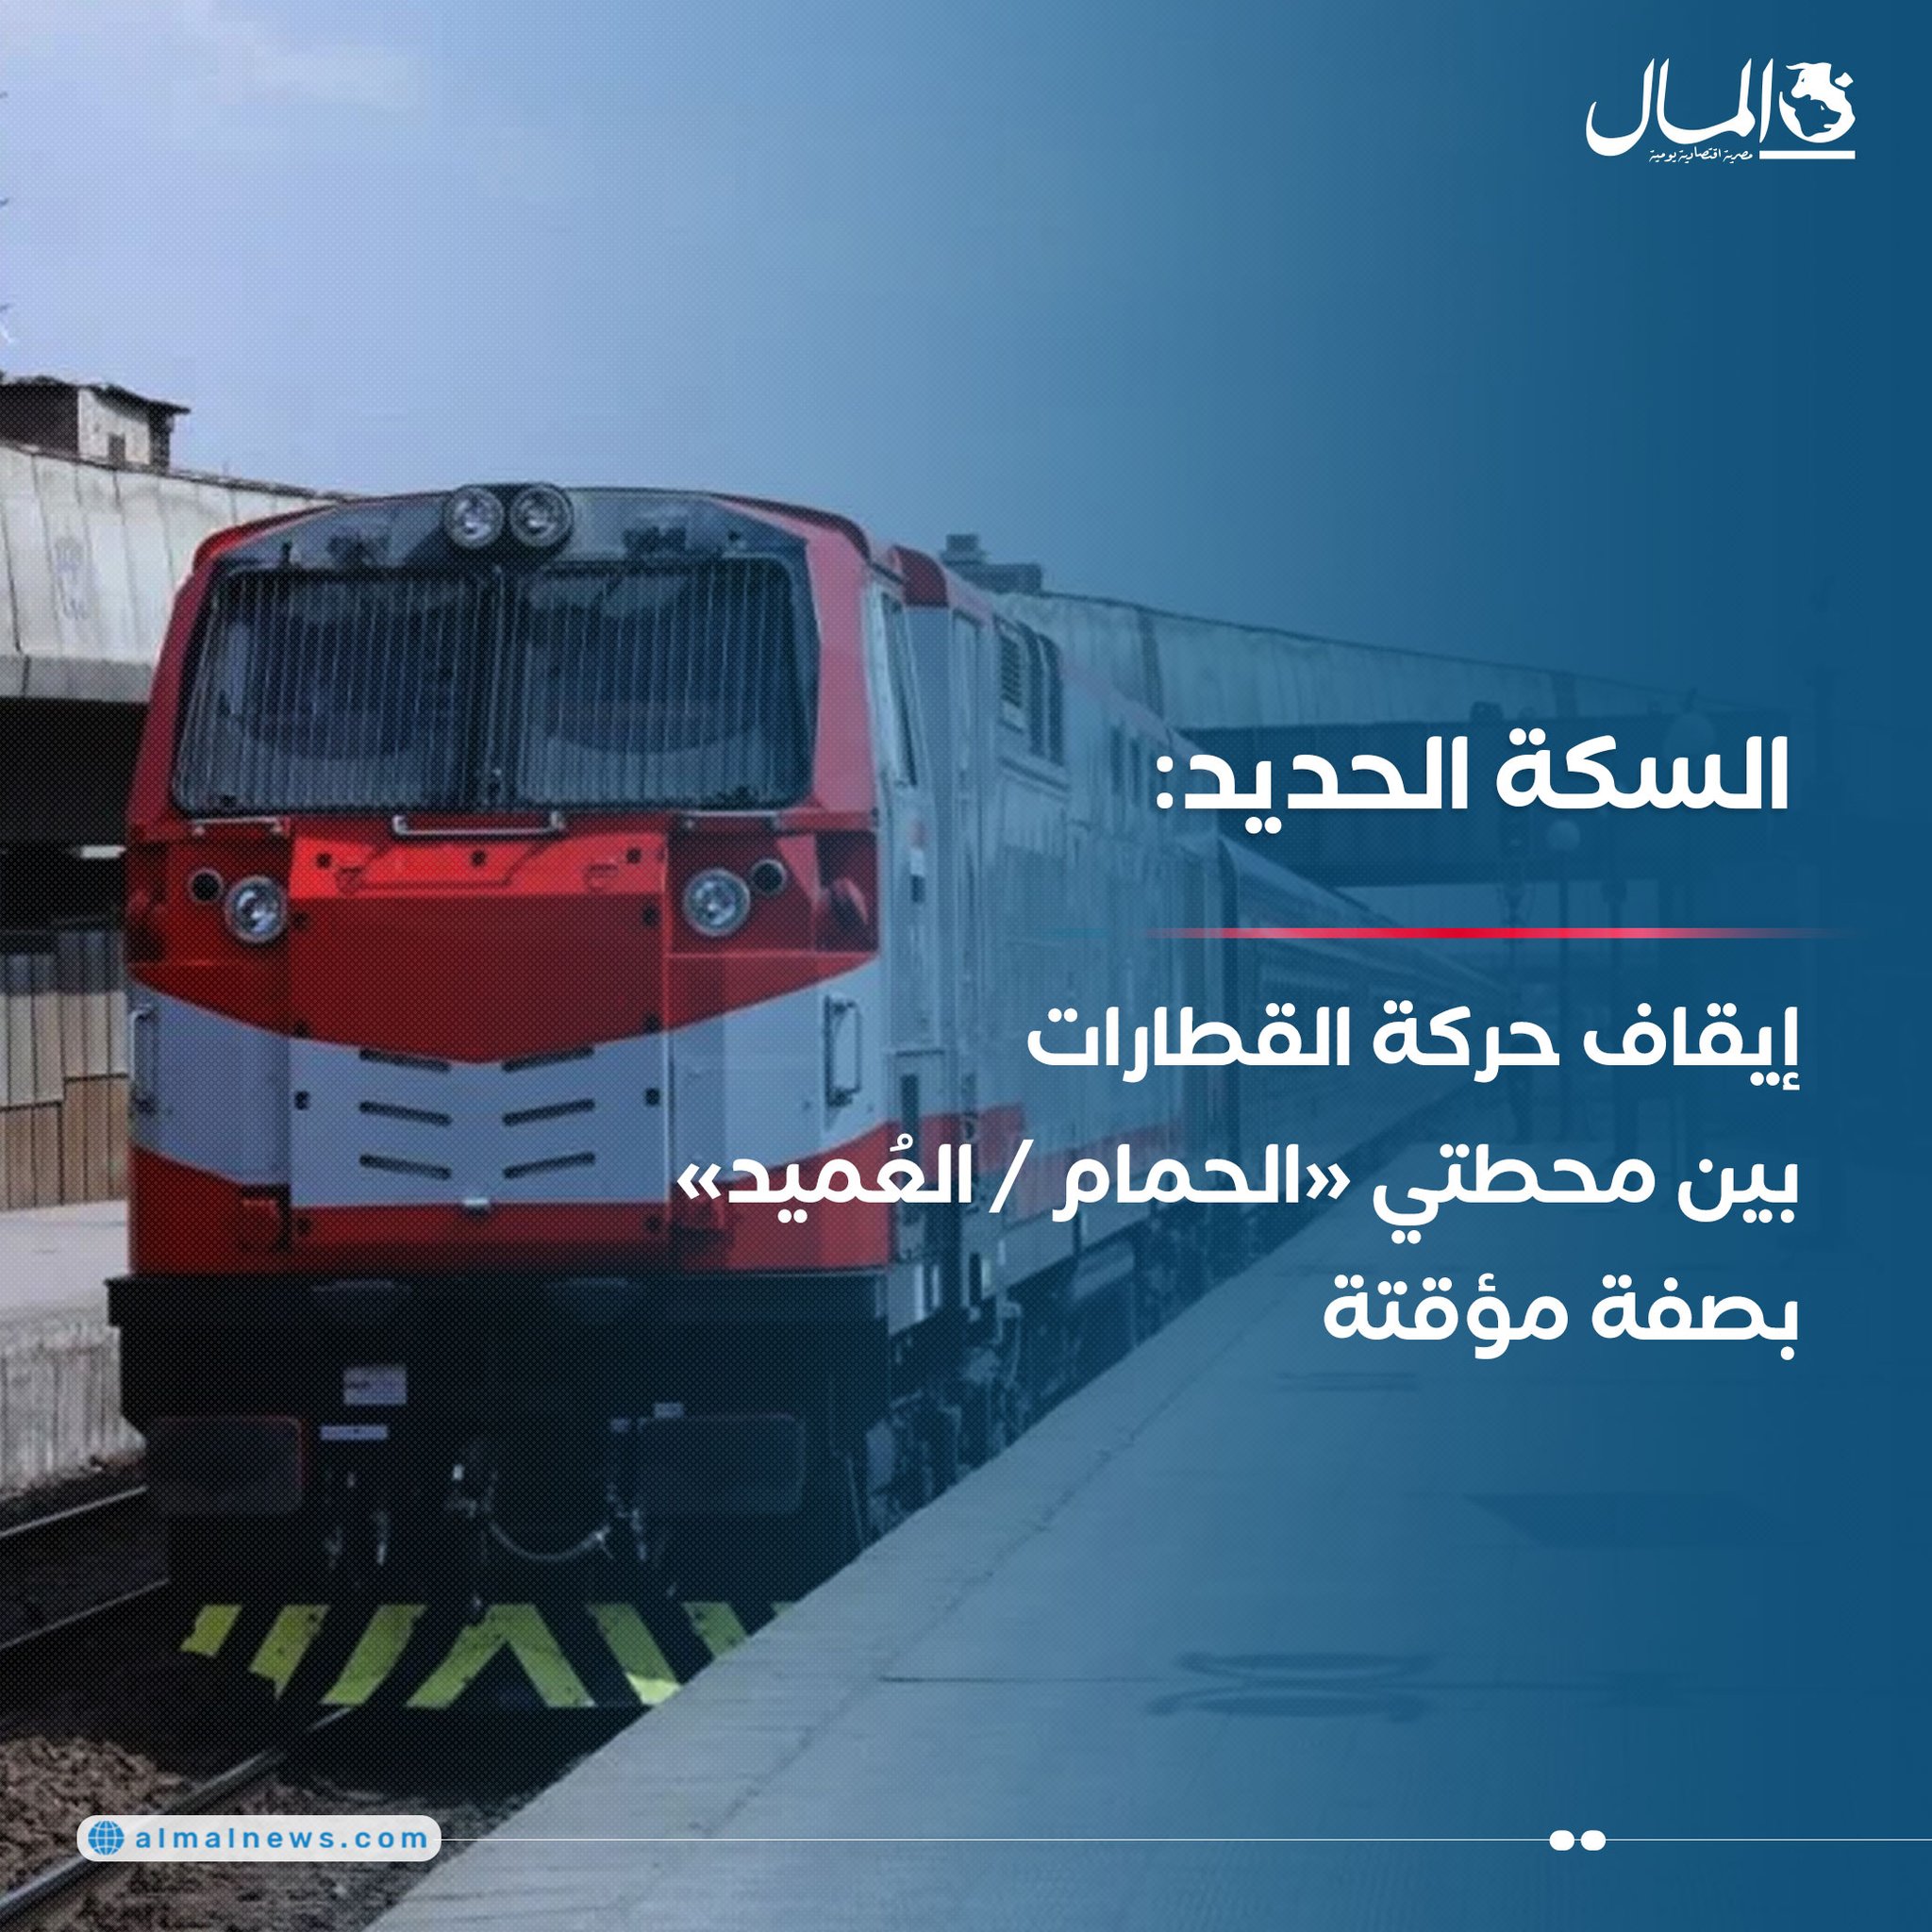 السكة الحديد: إيقاف حركة القطارات بين محطتي «الحمام / العُميد» بصفة مؤقتة. للتفاصيل 